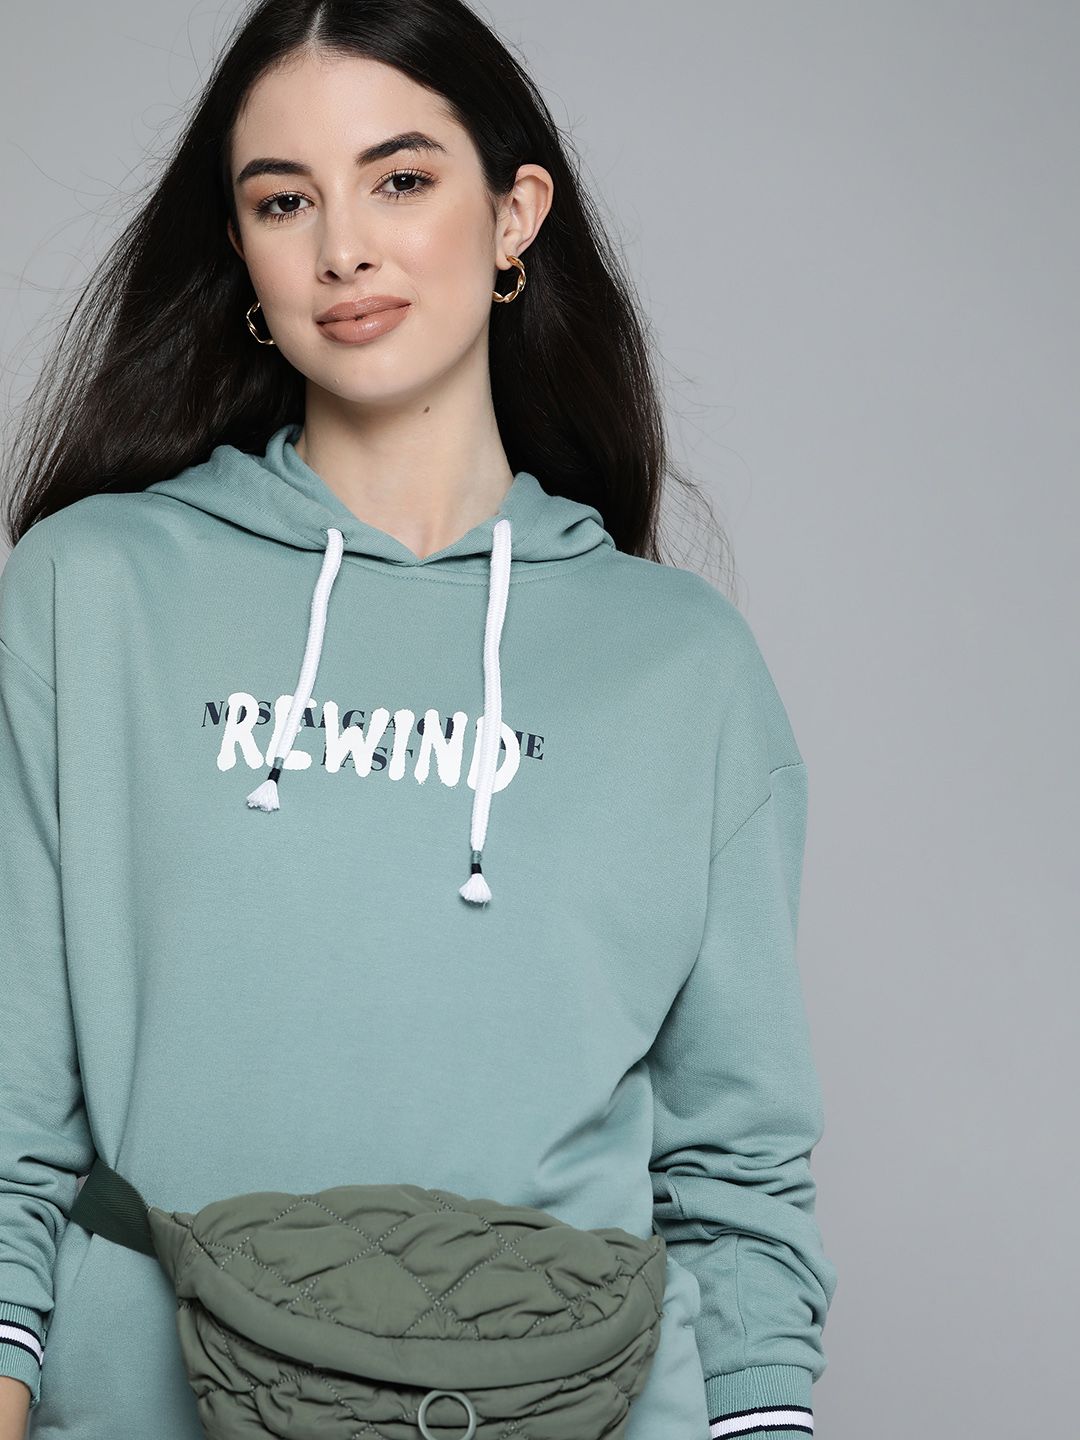 Harvard Women Green Printed Hooded Sweatshirt Price in India